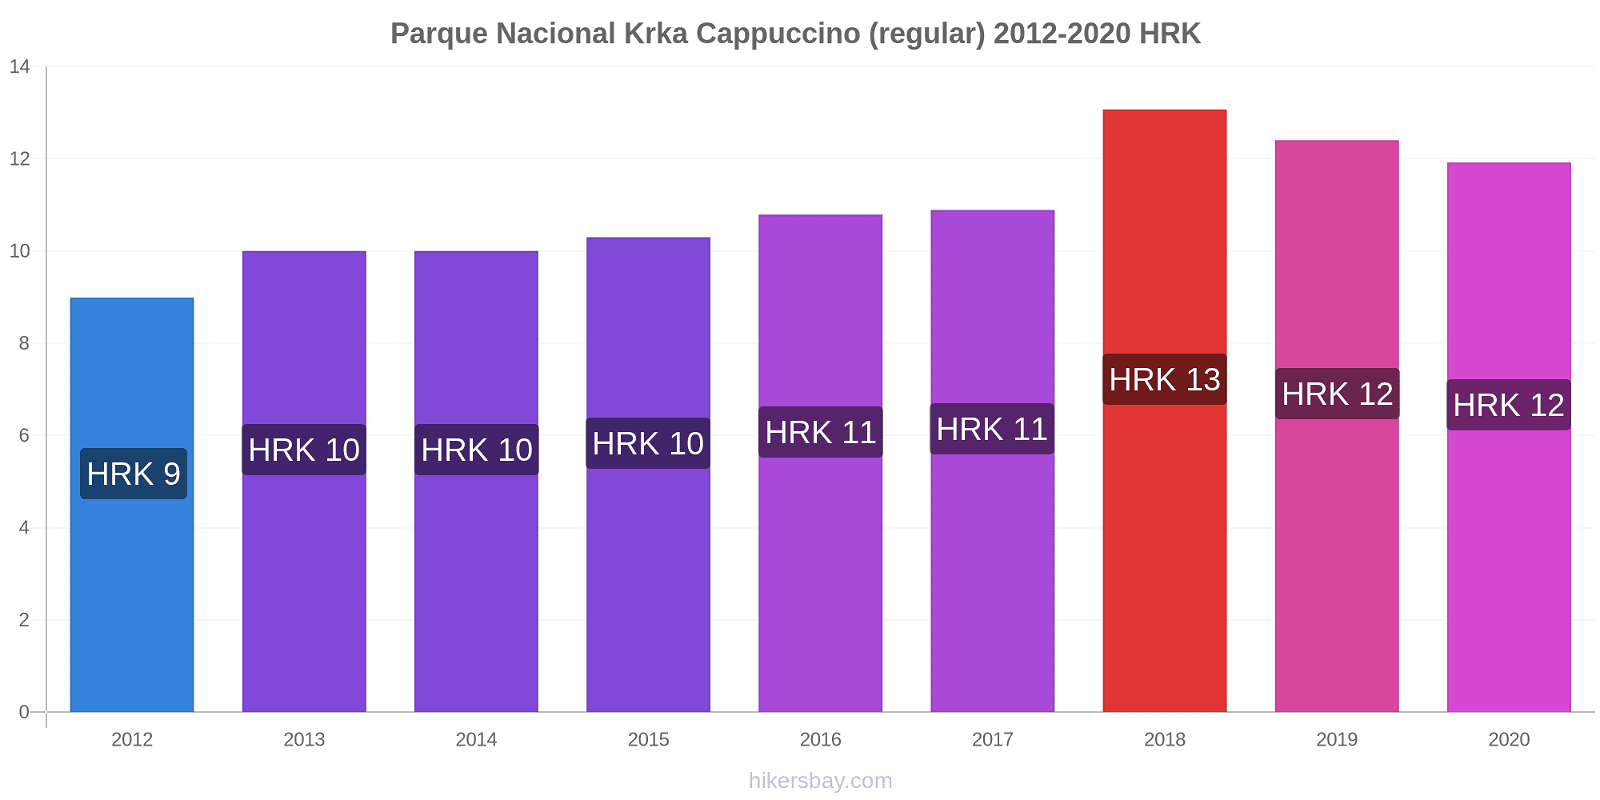 Parque Nacional Krka variação de preço Capuccino (regular) hikersbay.com